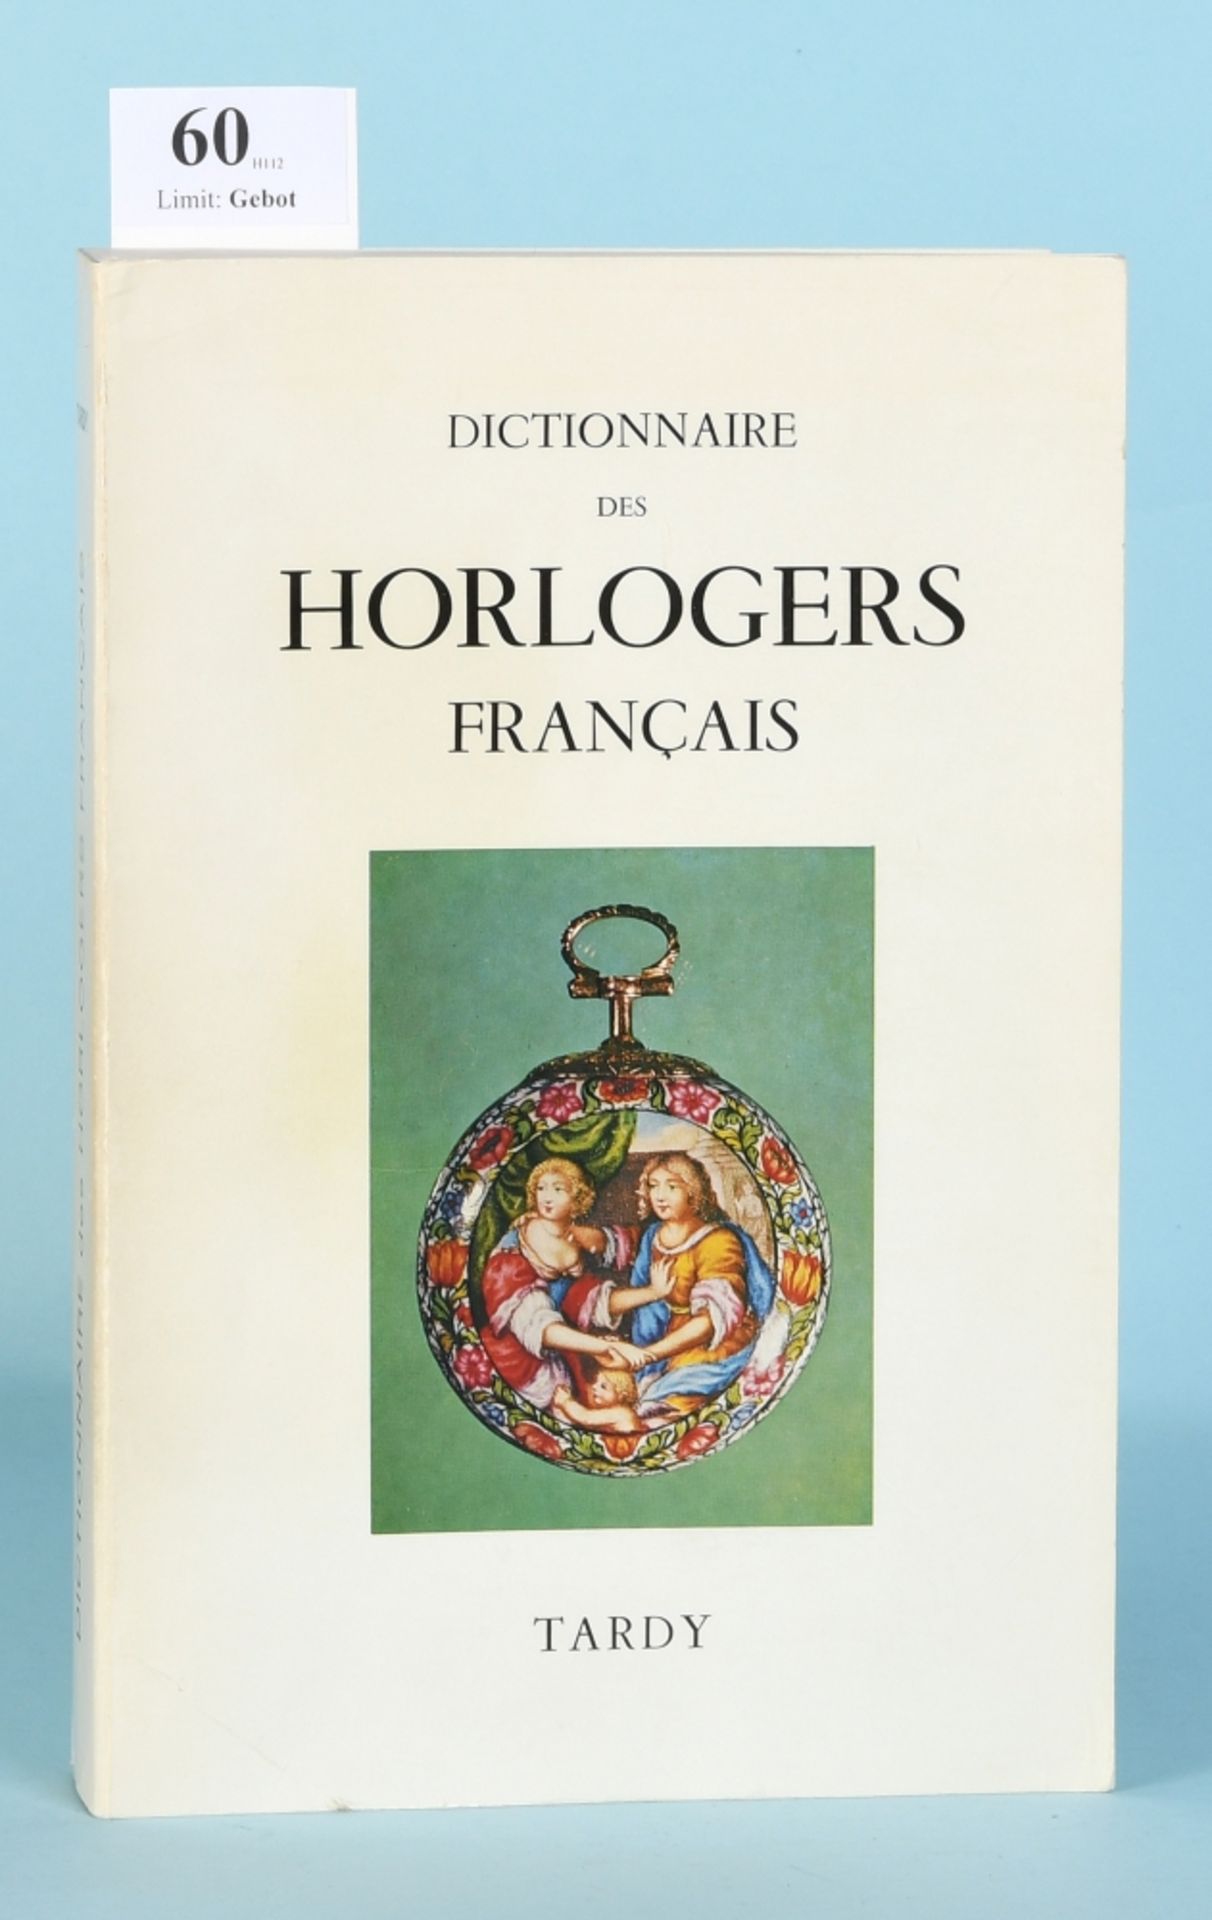 Tardy "Dictionnaire des horlogers francais"